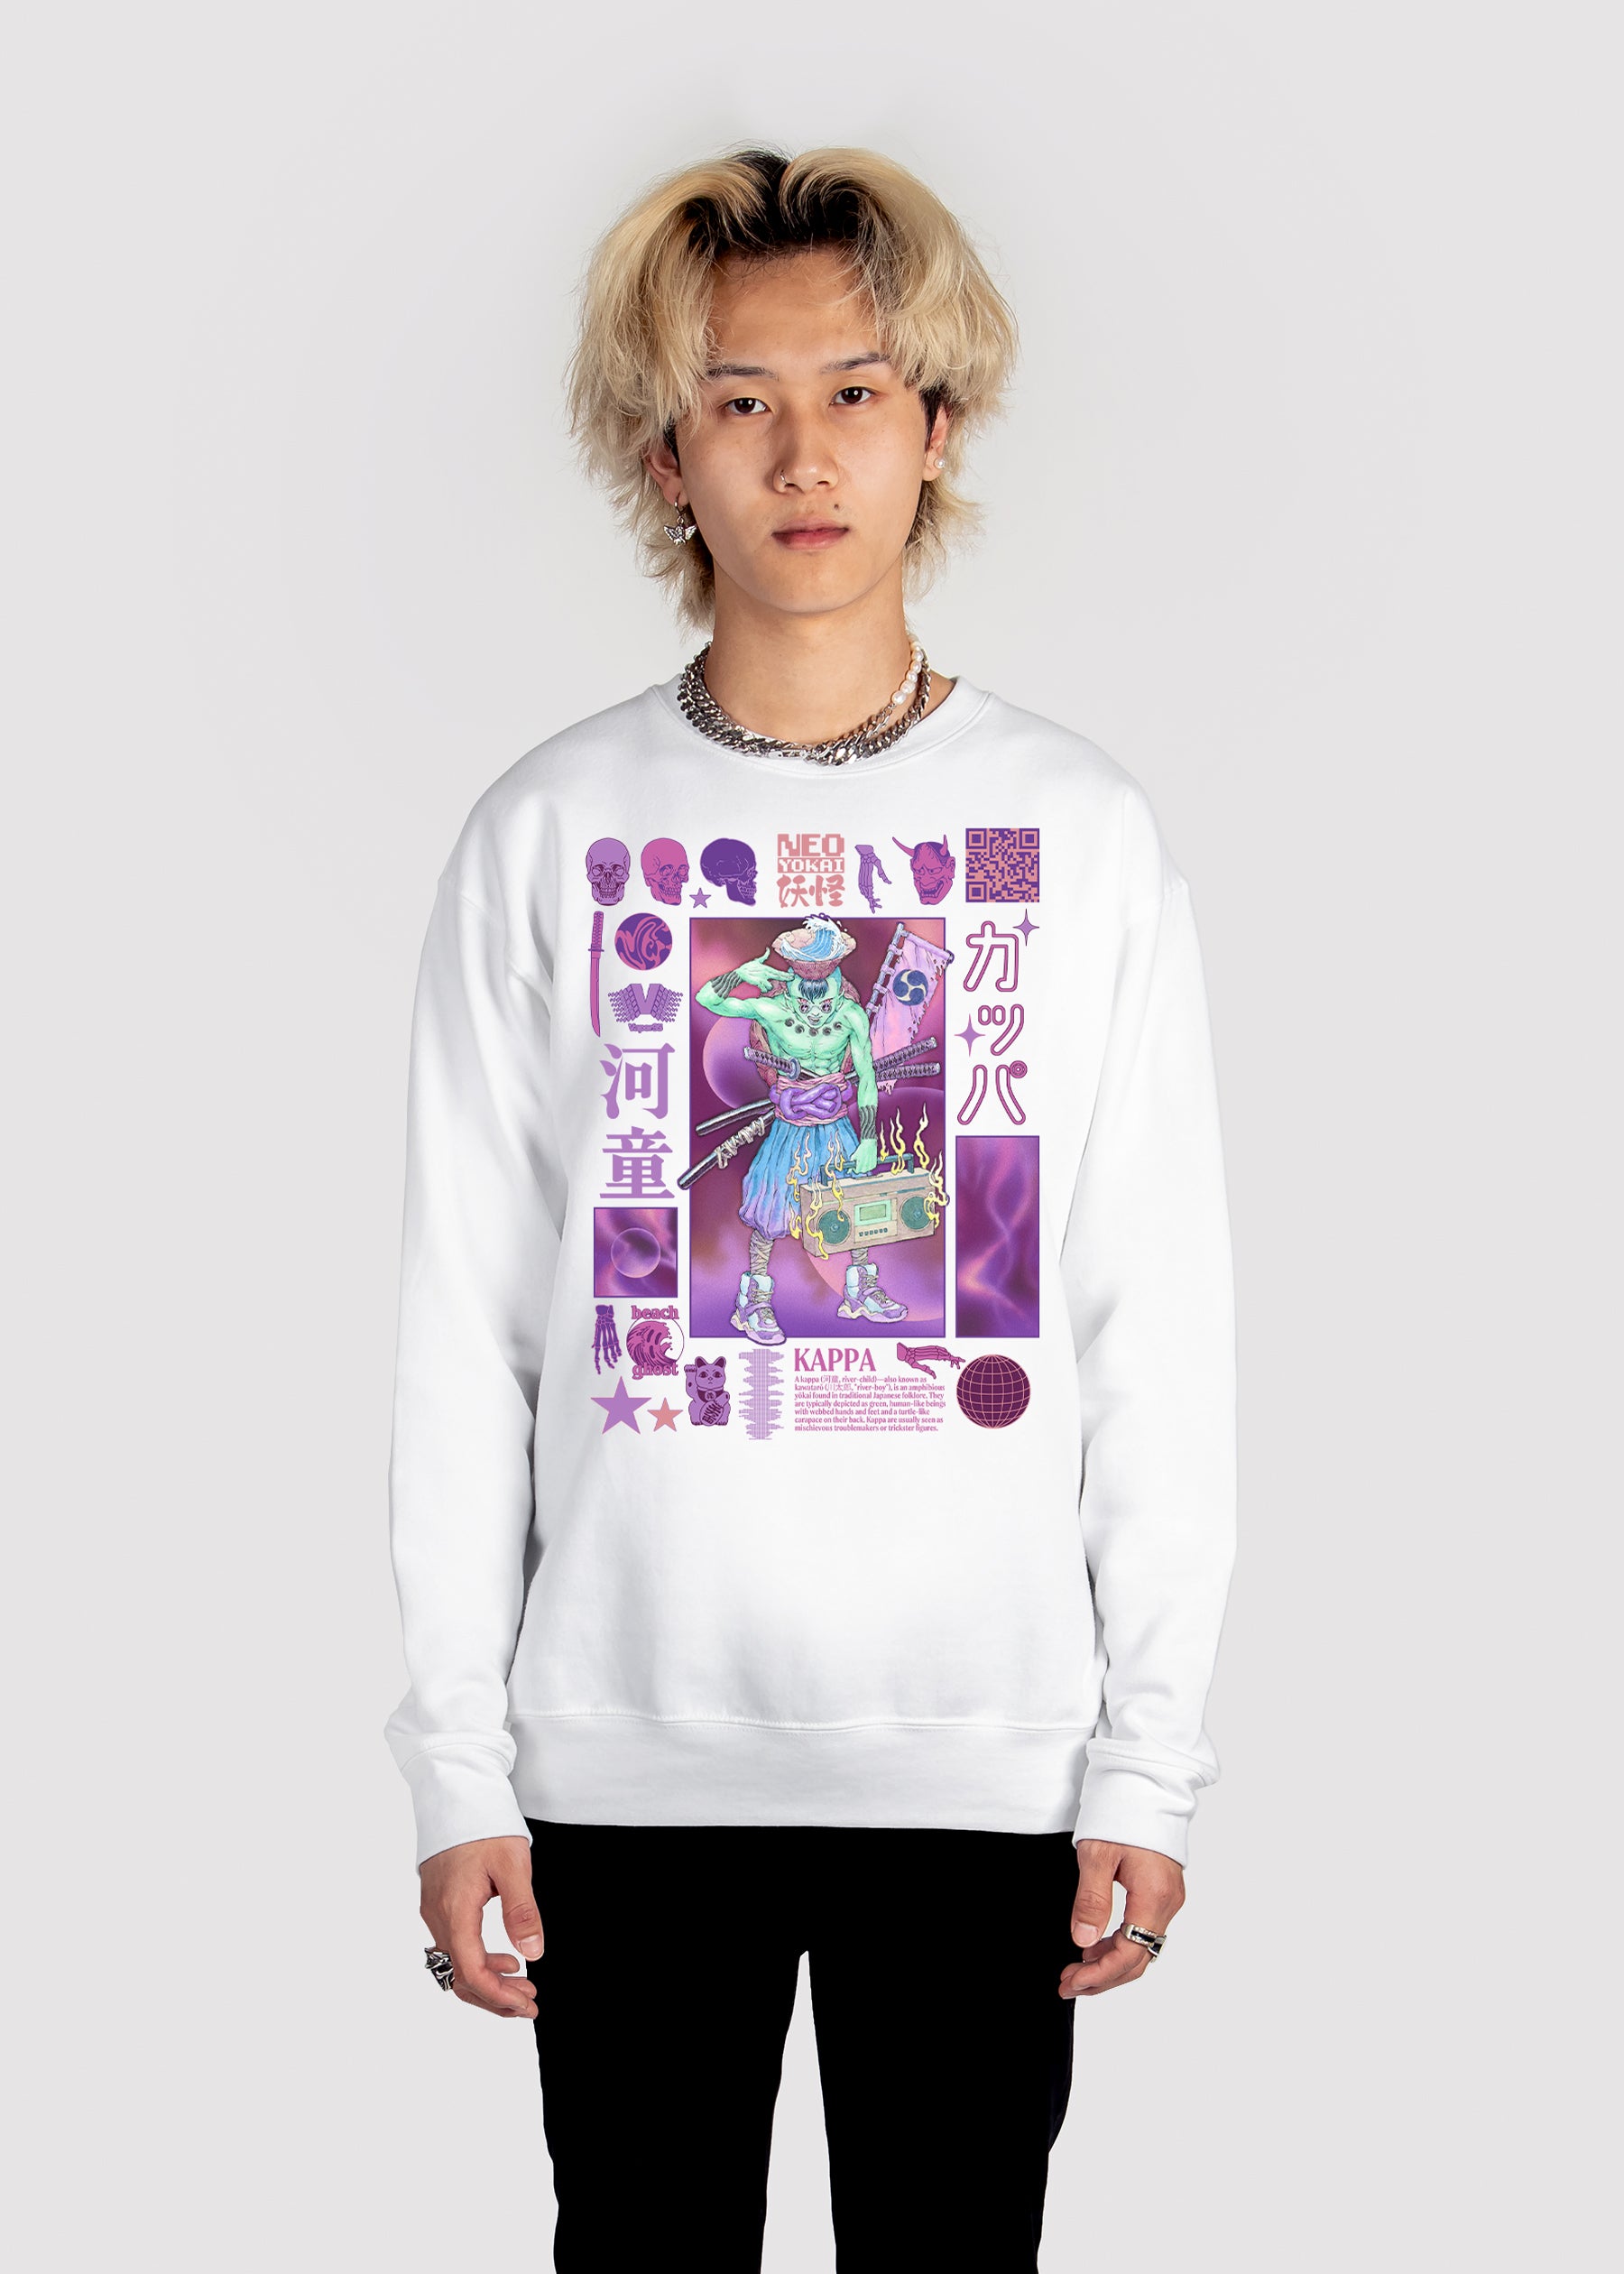 Vaporwave & Aesthetic Clothing | Kappa Sweatshirt – Vapor95 | Sweatshirts